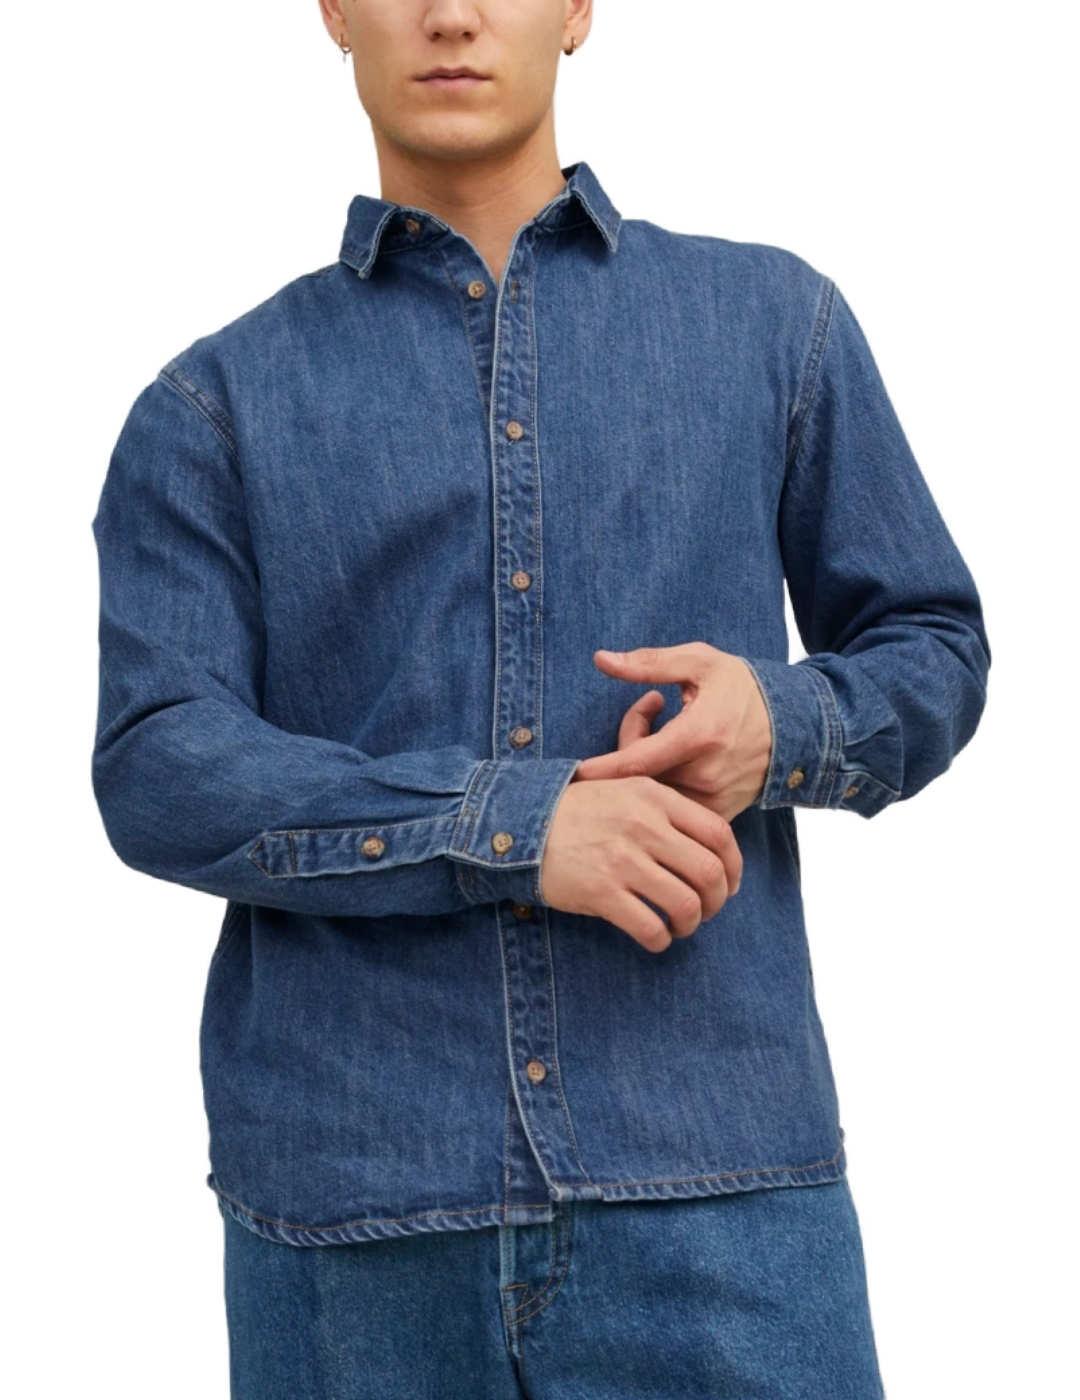 Camisa Jack&jones Henry azul marino sin bolsillos de hombre